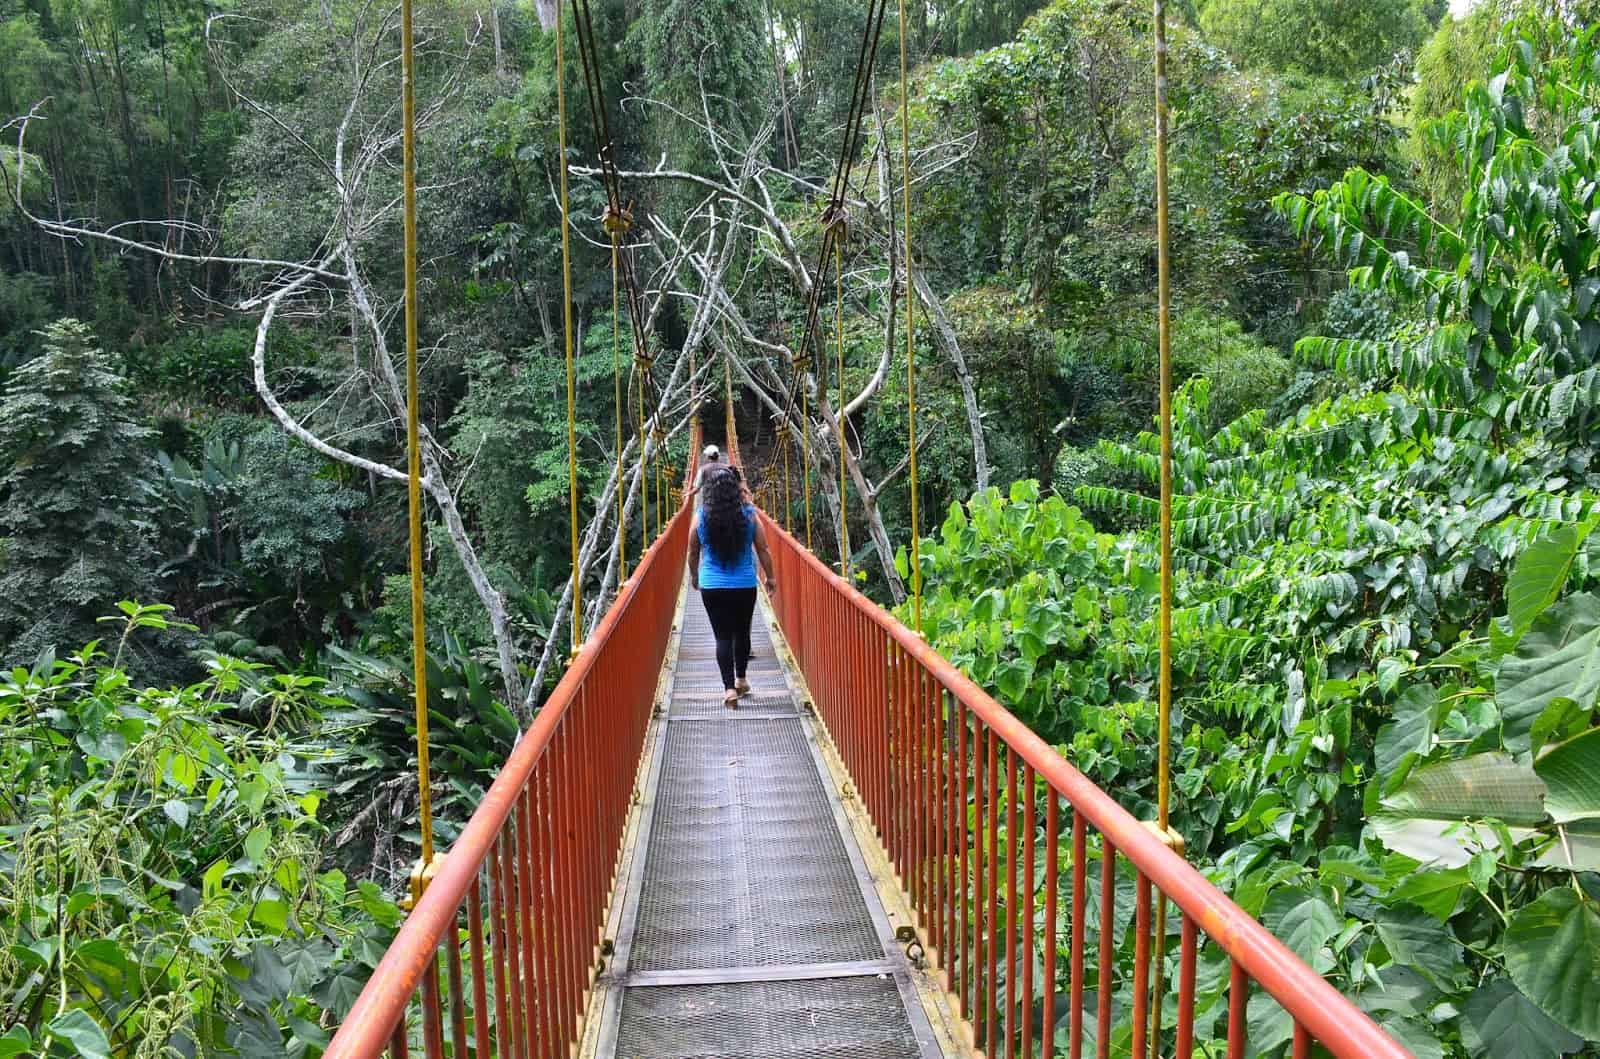 Suspension bridge at Quindío Botanical Garden in Calarcá, Quindío, Colombia